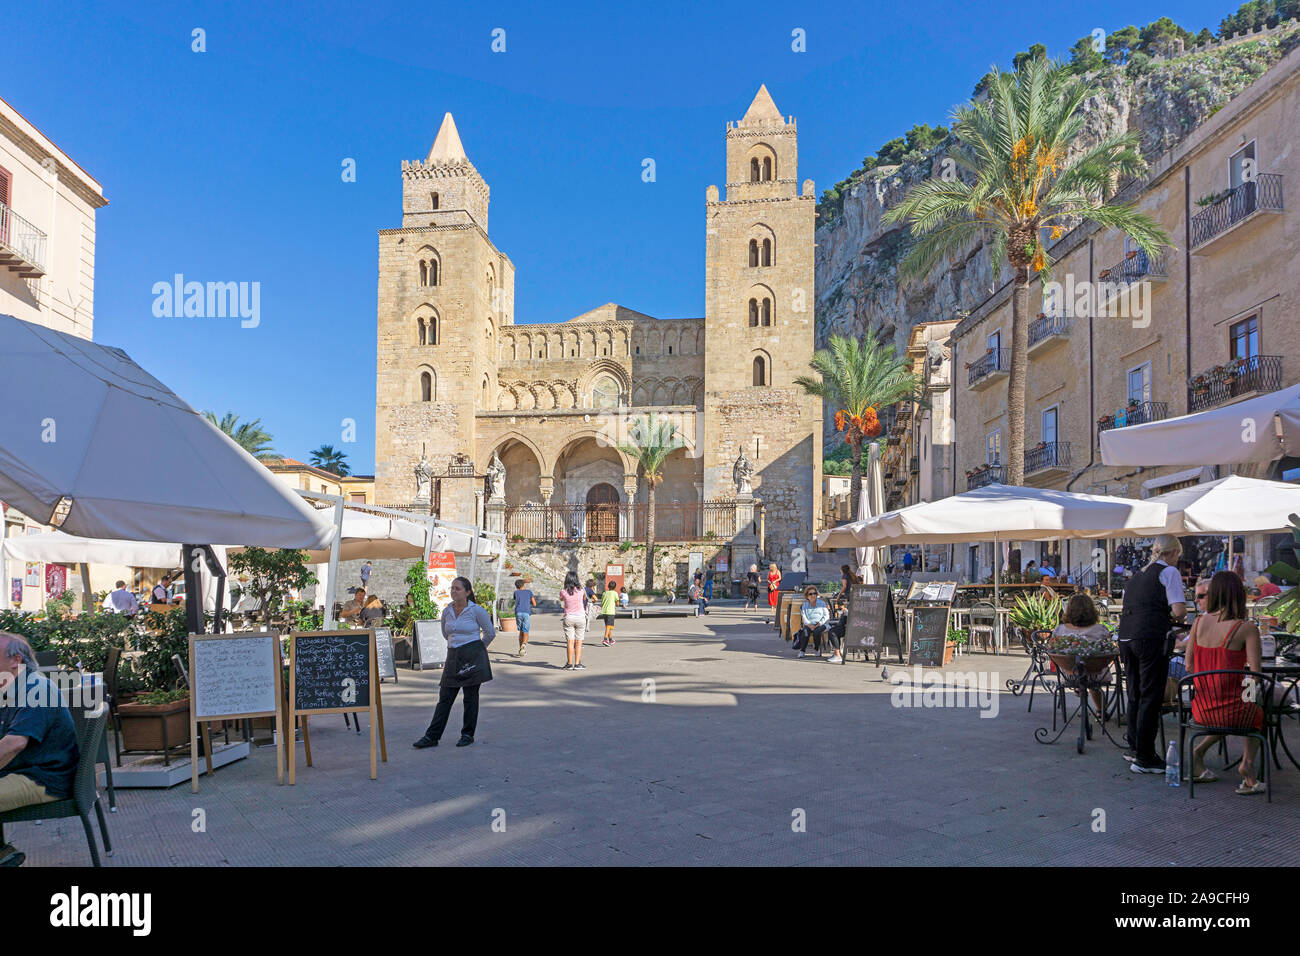 La plaza de la Catedral (Piazza del Duomo). la plaza Catedral de Cefalu, Sicilia, rodeada por edificios históricos y restaurantes. Foto de stock